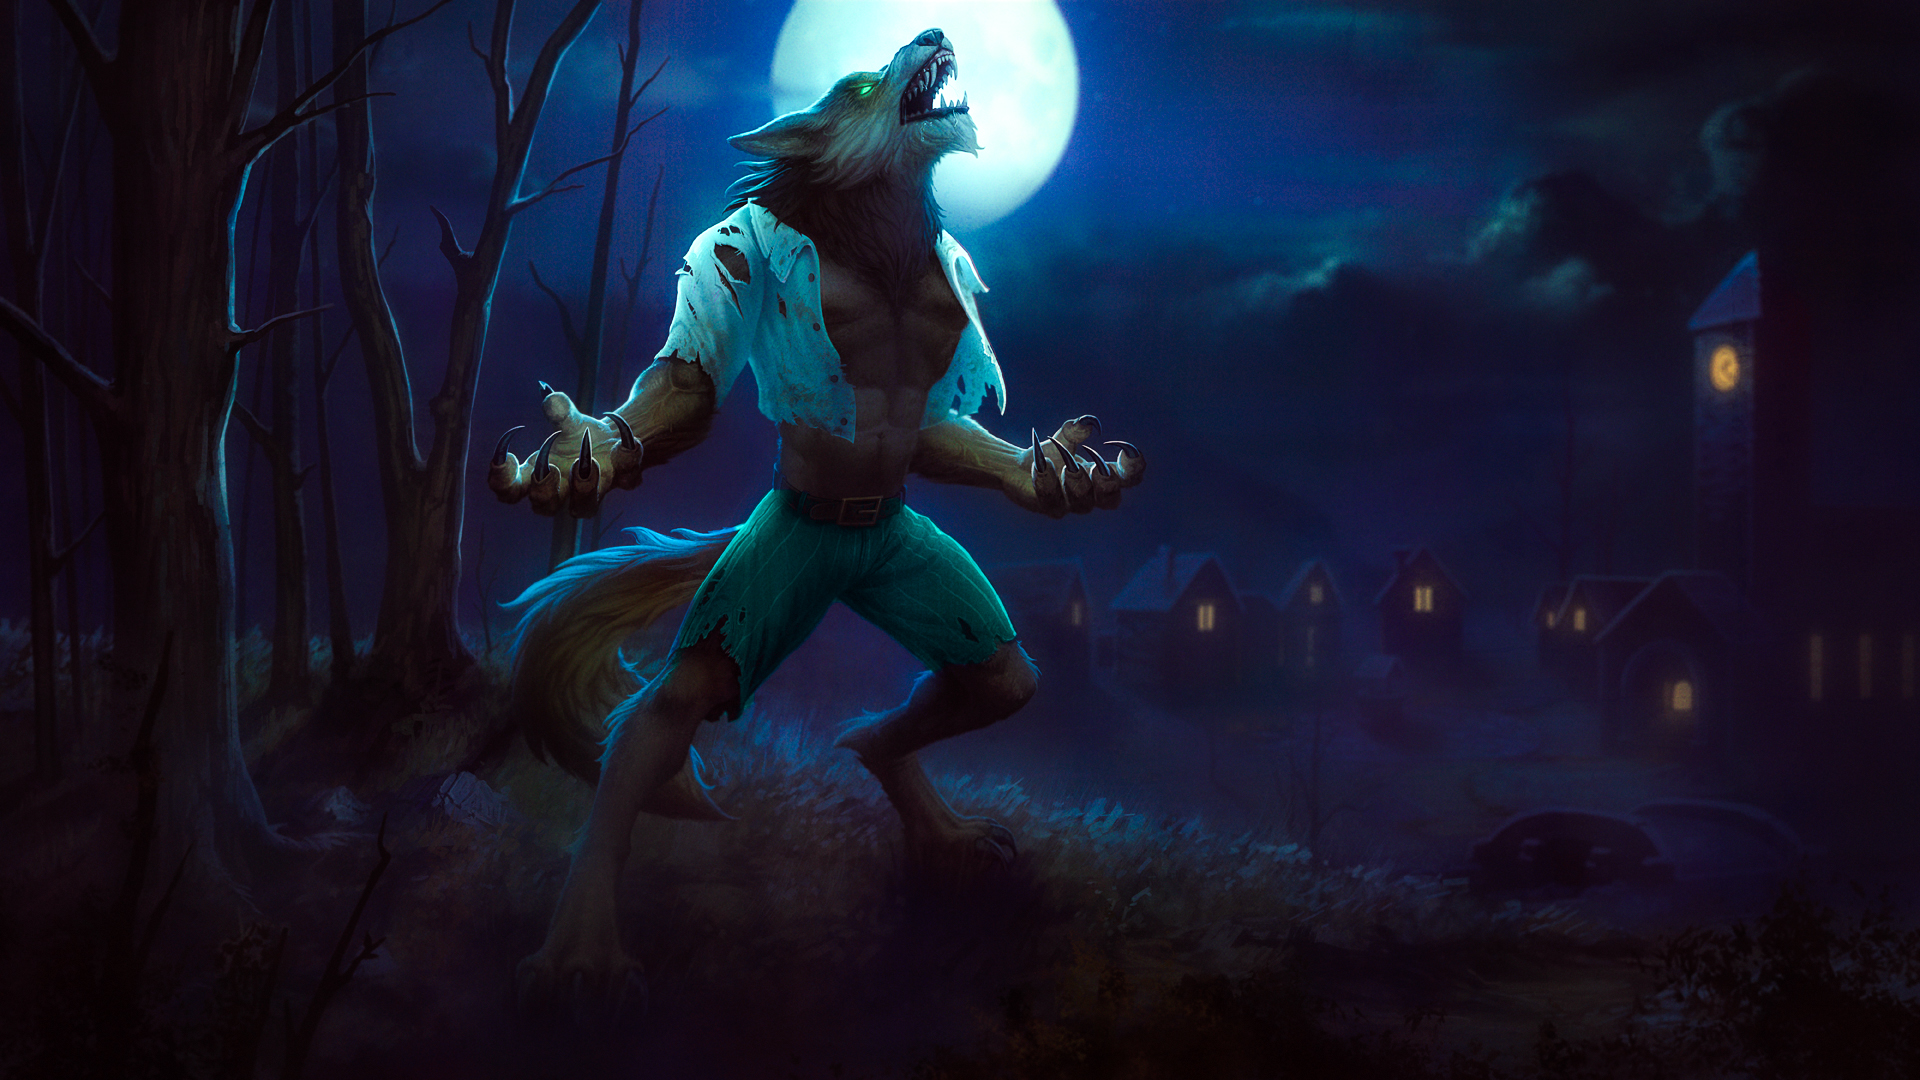 Werewolf: The Last Warrior